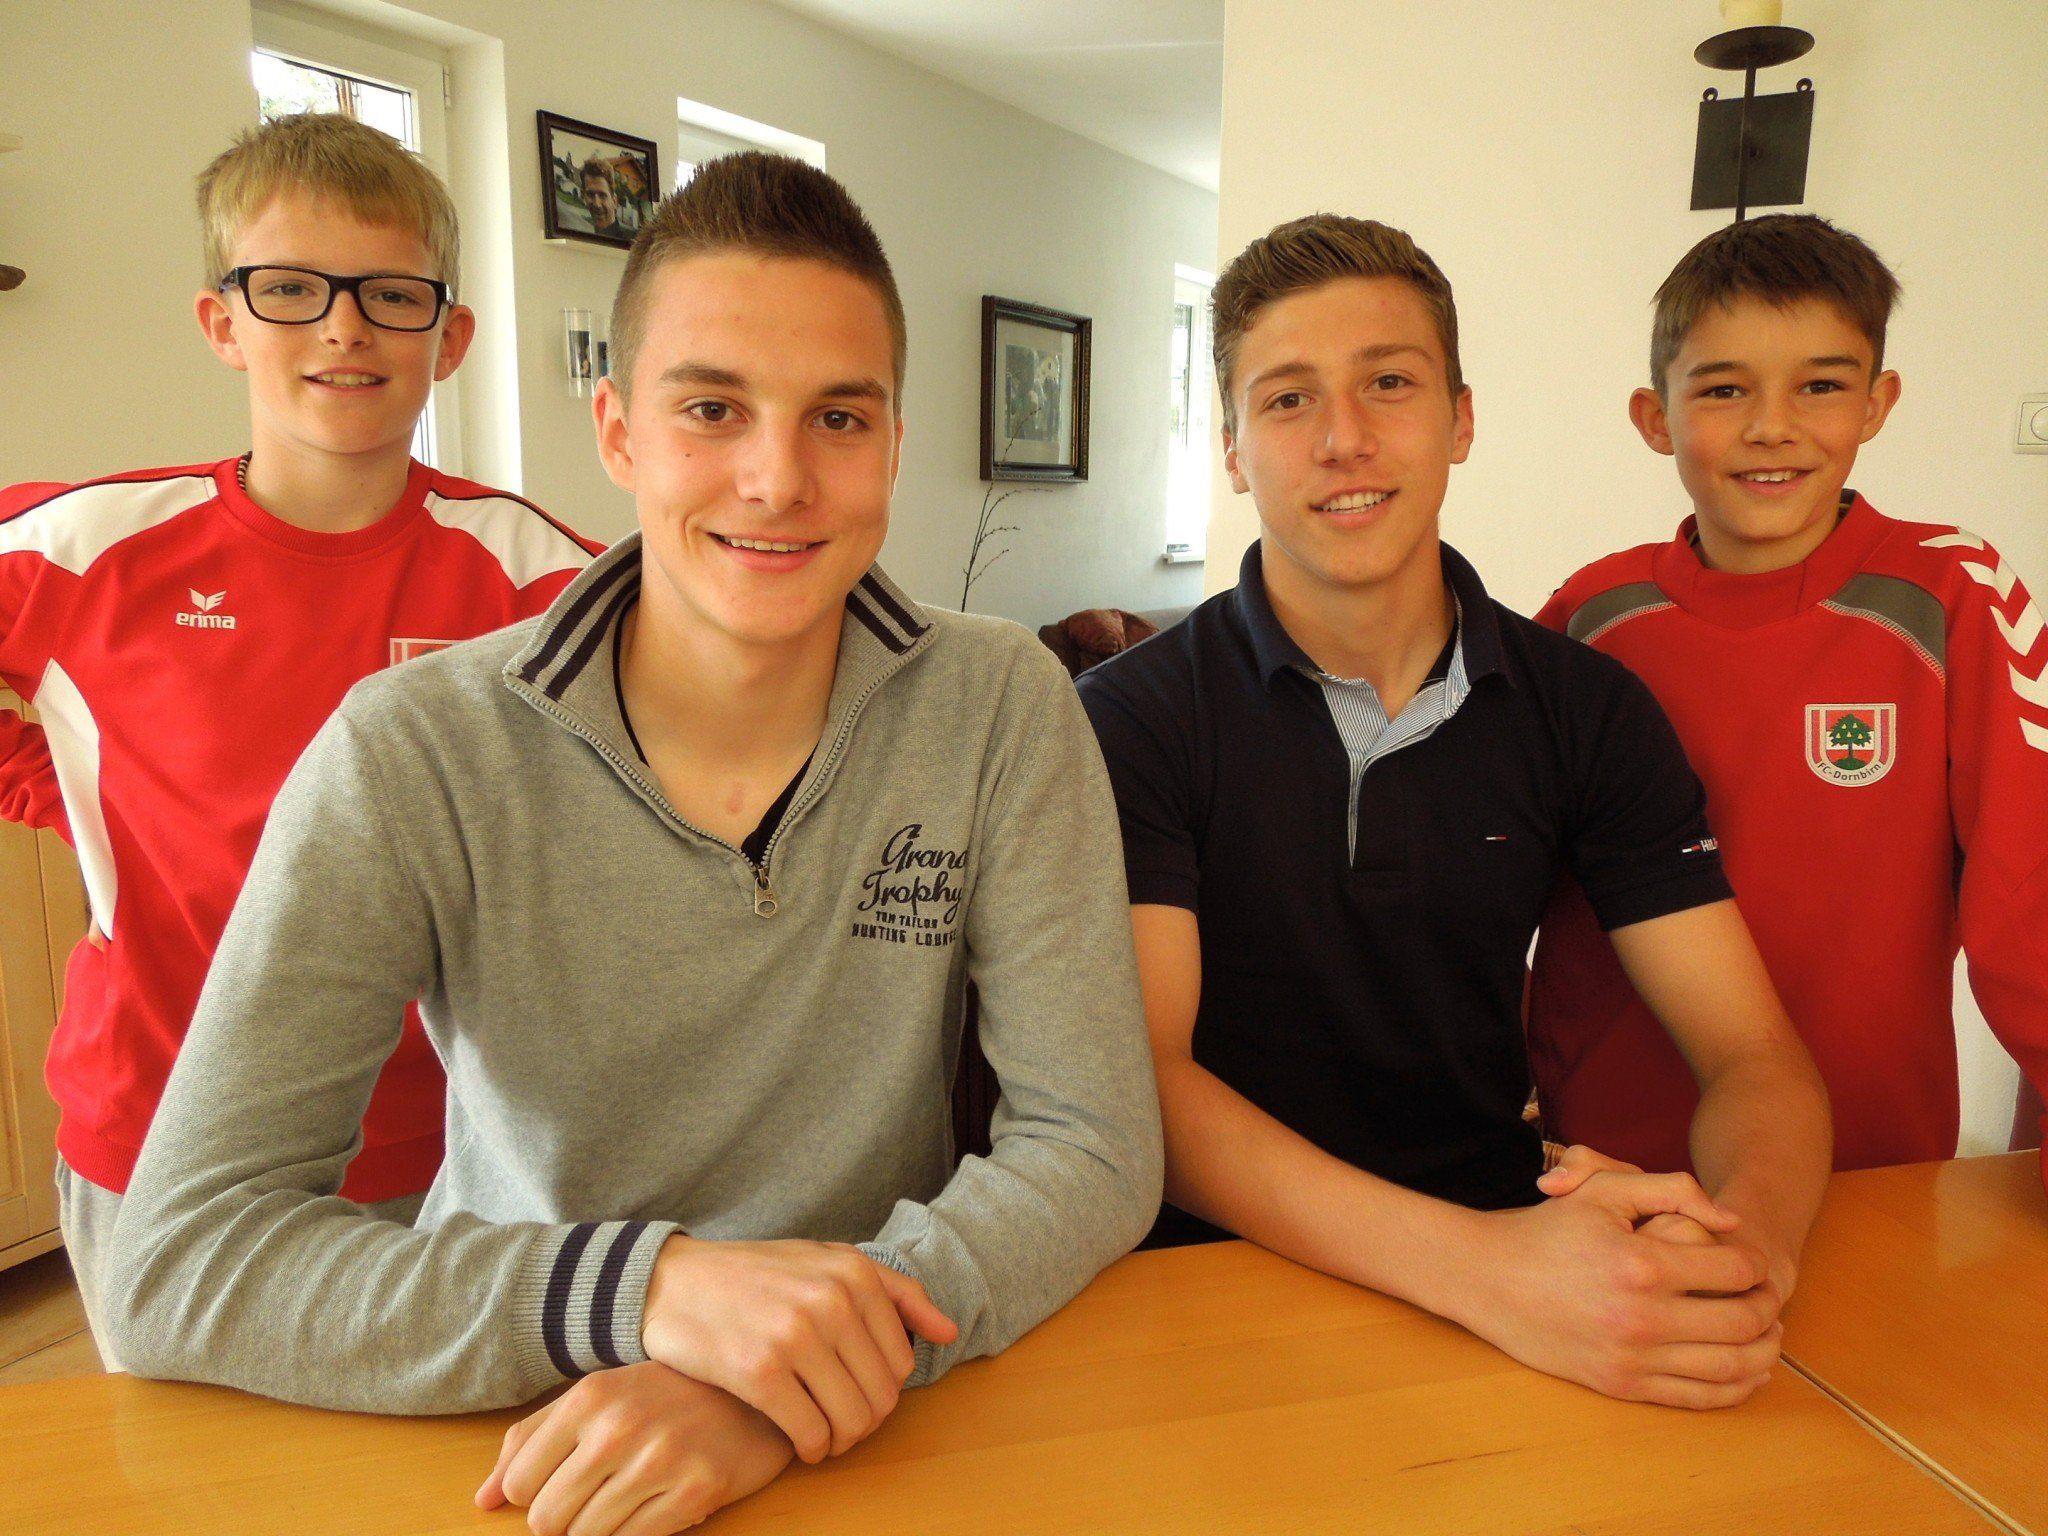 Unsere Kinderreporter trafen zwei tolle Fußballvorbilder aus Dornbirn zum Interview.